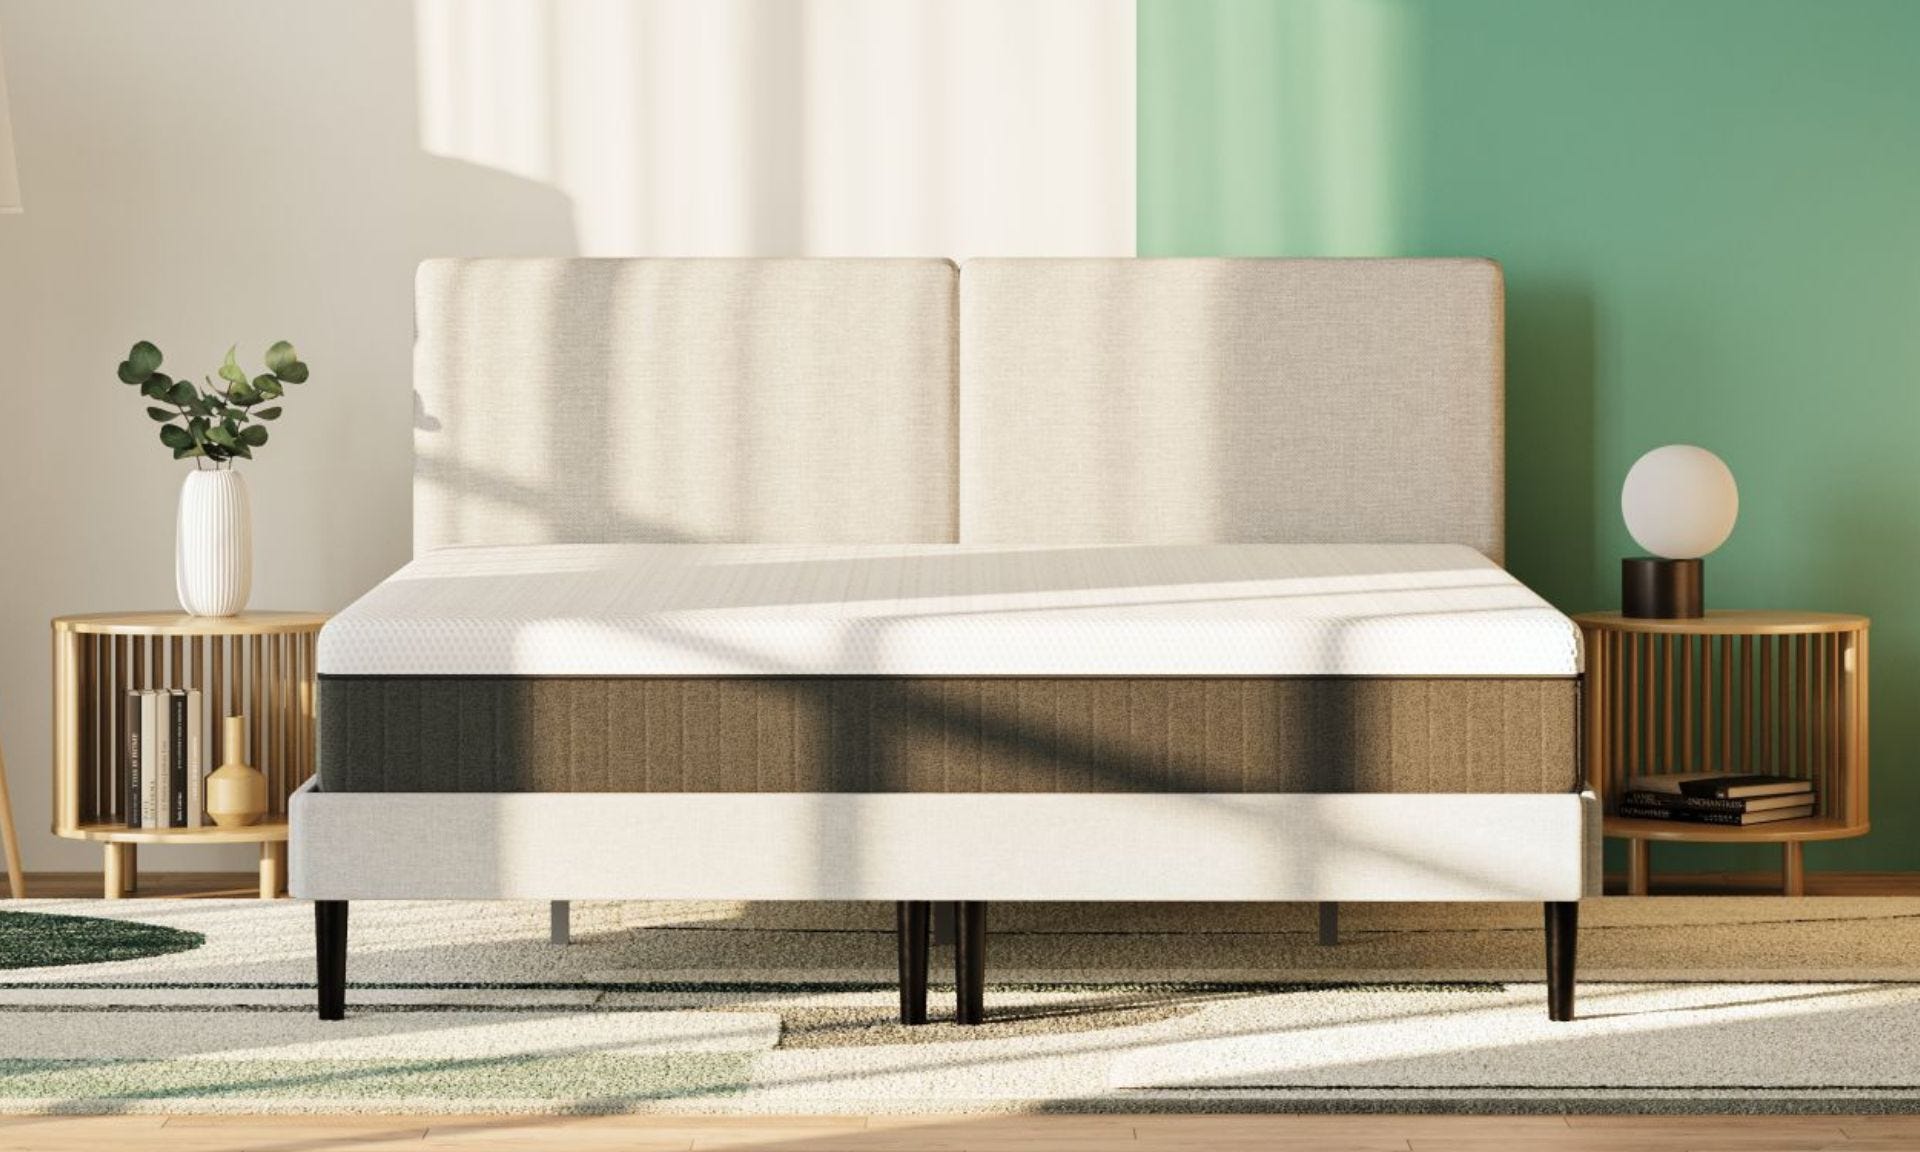 Colchón emma hybrid premium en cama tapizada en dormitorio con paredes verdes y blancas